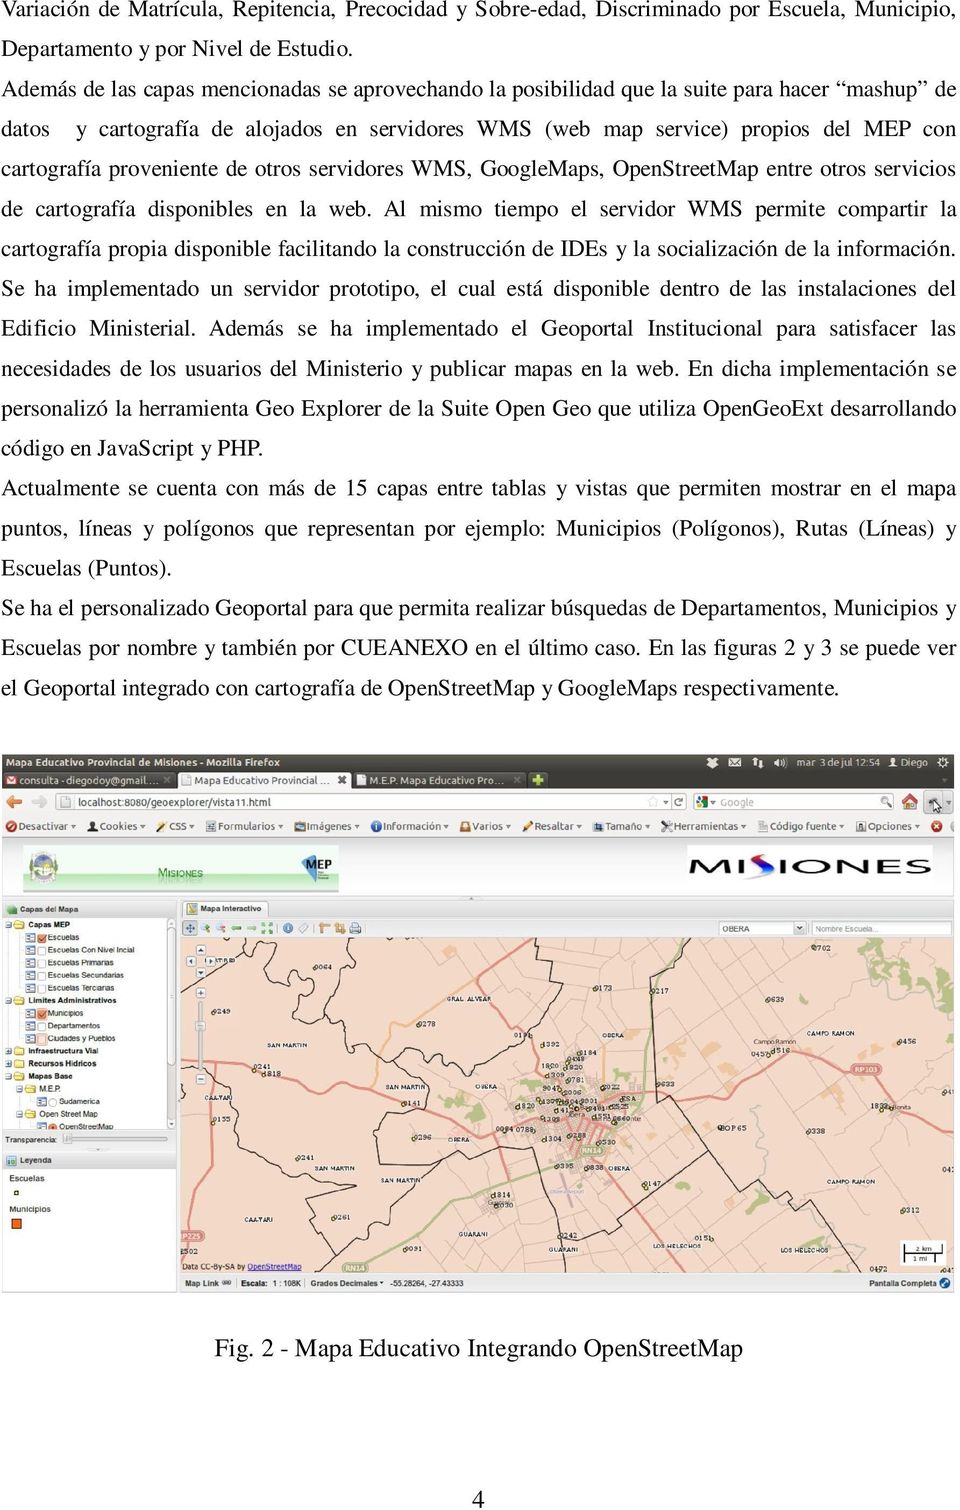 proveniente de otros servidores WMS, GoogleMaps, OpenStreetMap entre otros servicios de cartografía disponibles en la web.